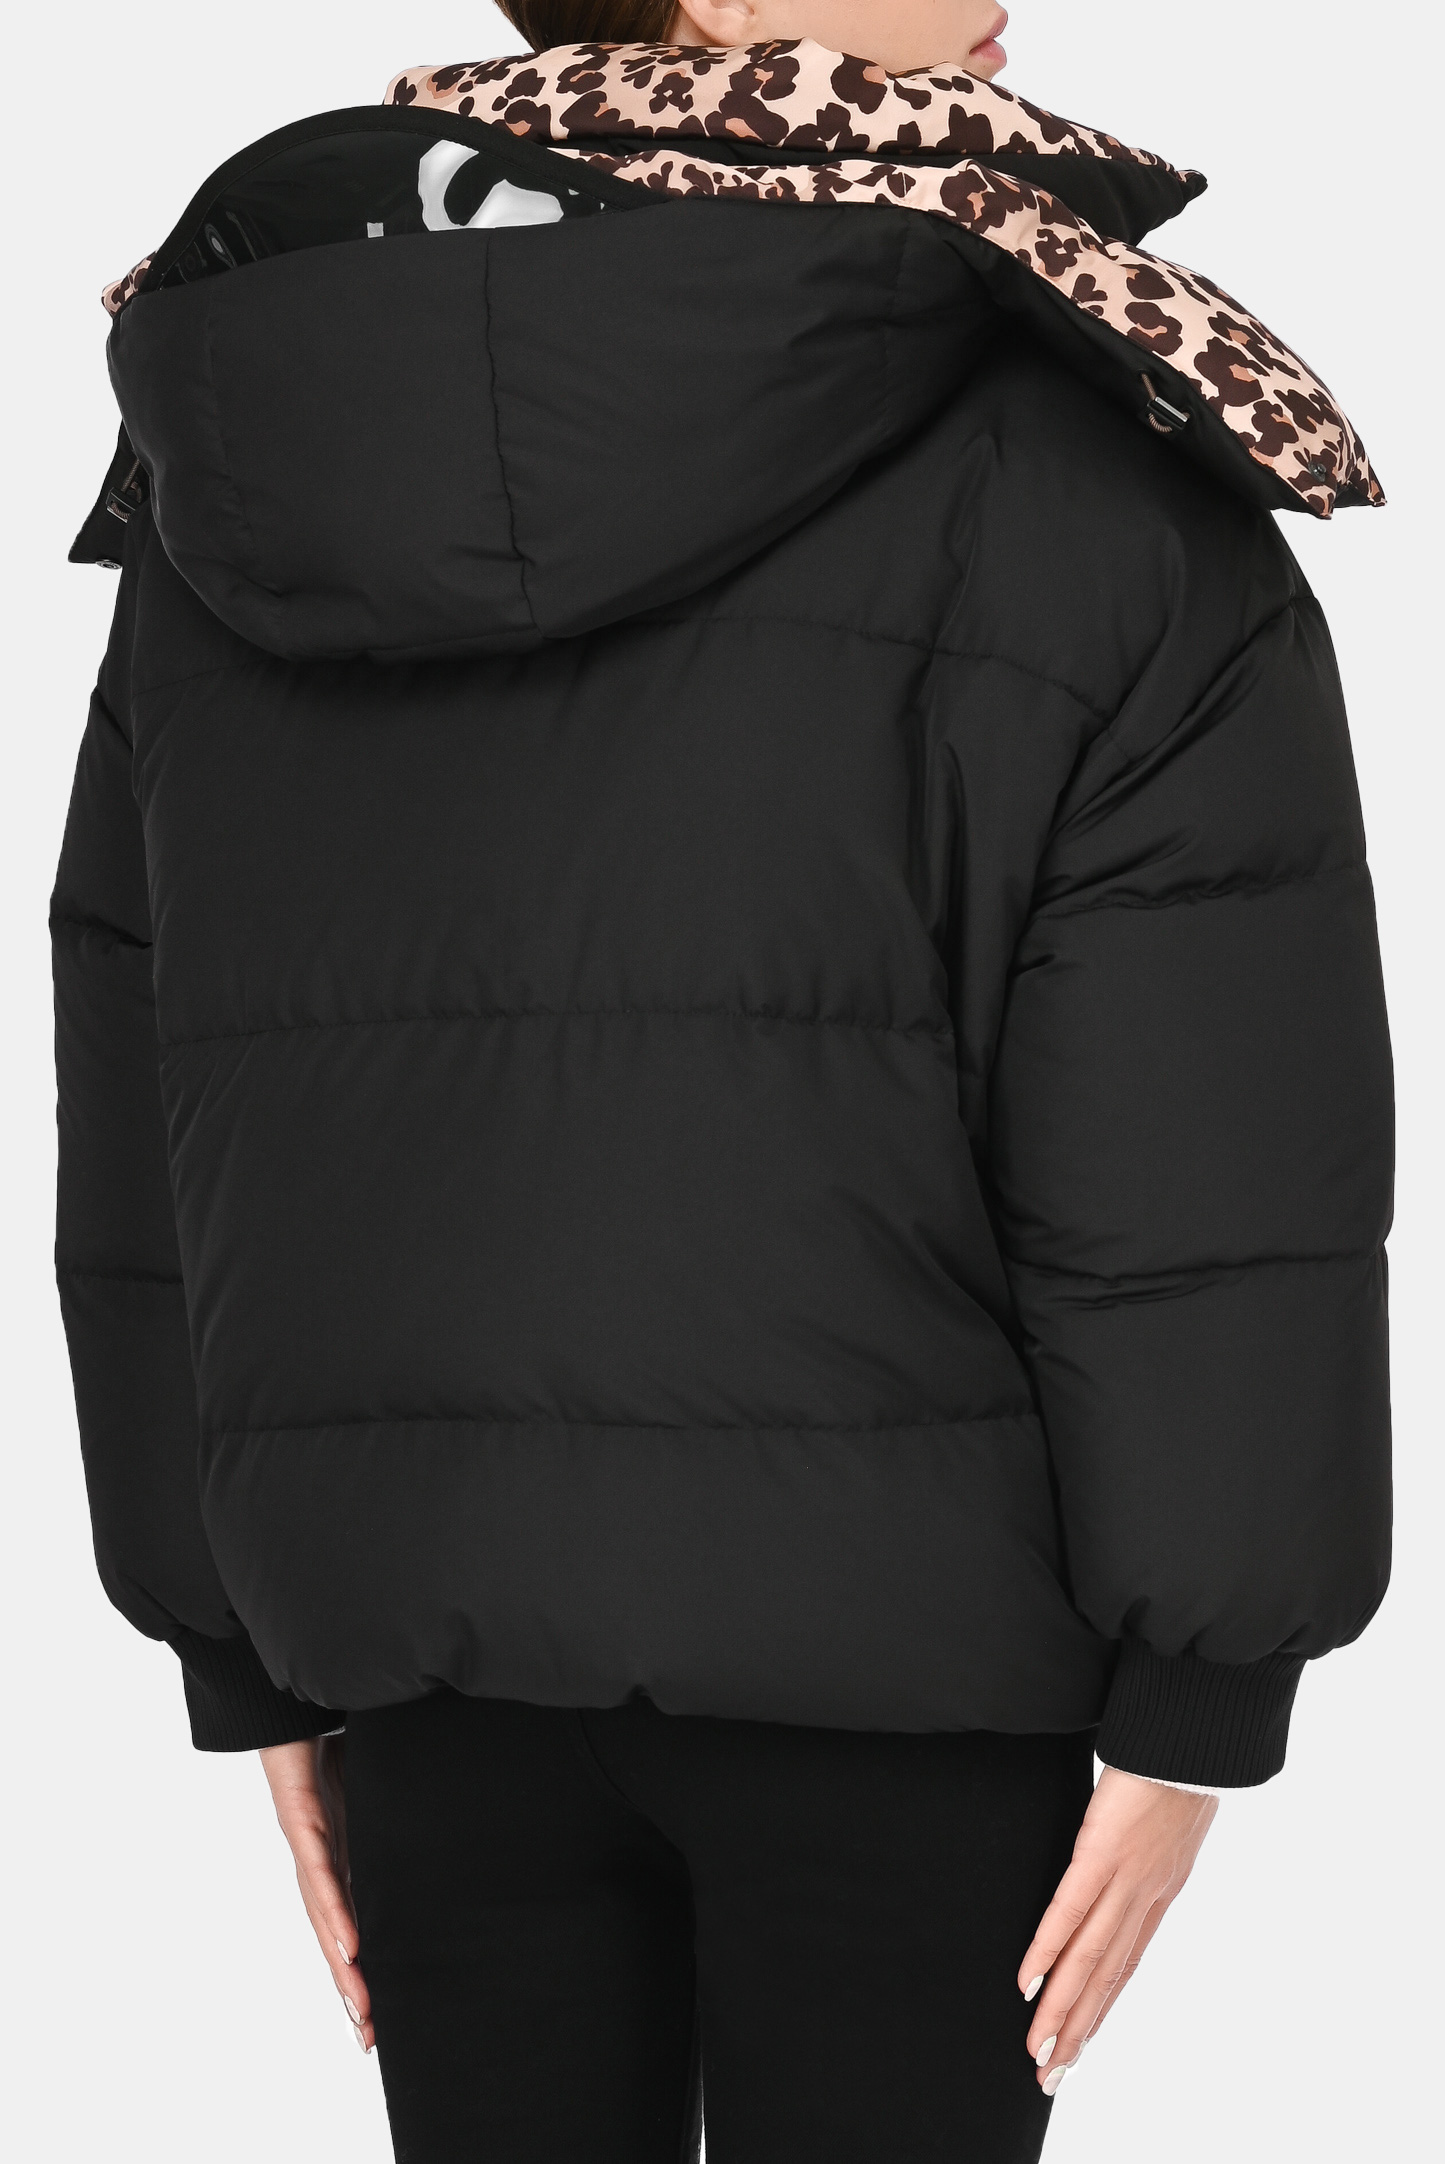 Куртка FENDI FAN013 AER8, цвет: Черный, Женский